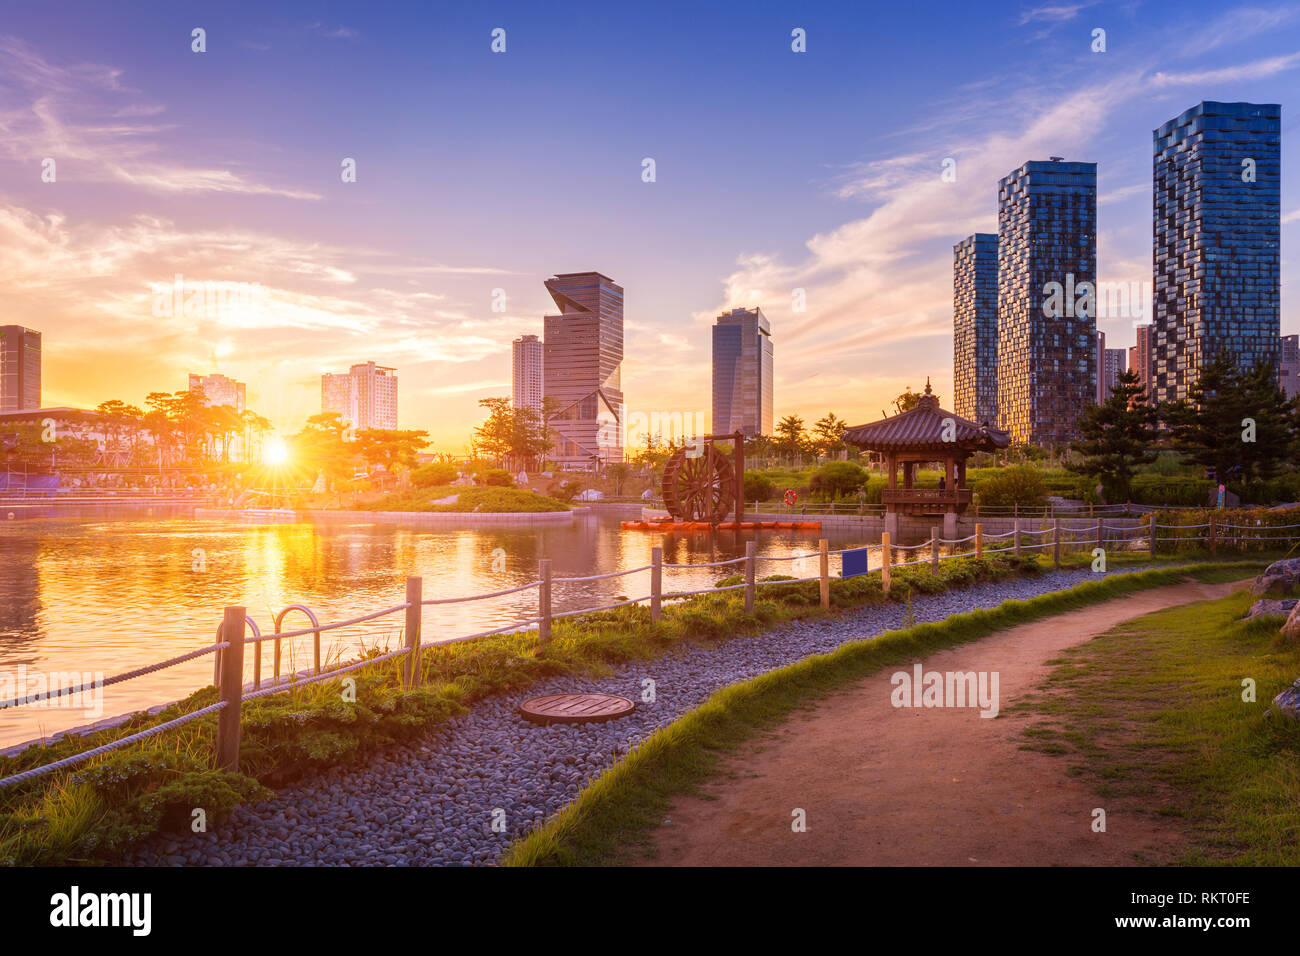 La ville de Séoul avec beau coucher de soleil, de Central Park dans le quartier d'affaires international de Songdo Incheon, Corée du Sud. Banque D'Images